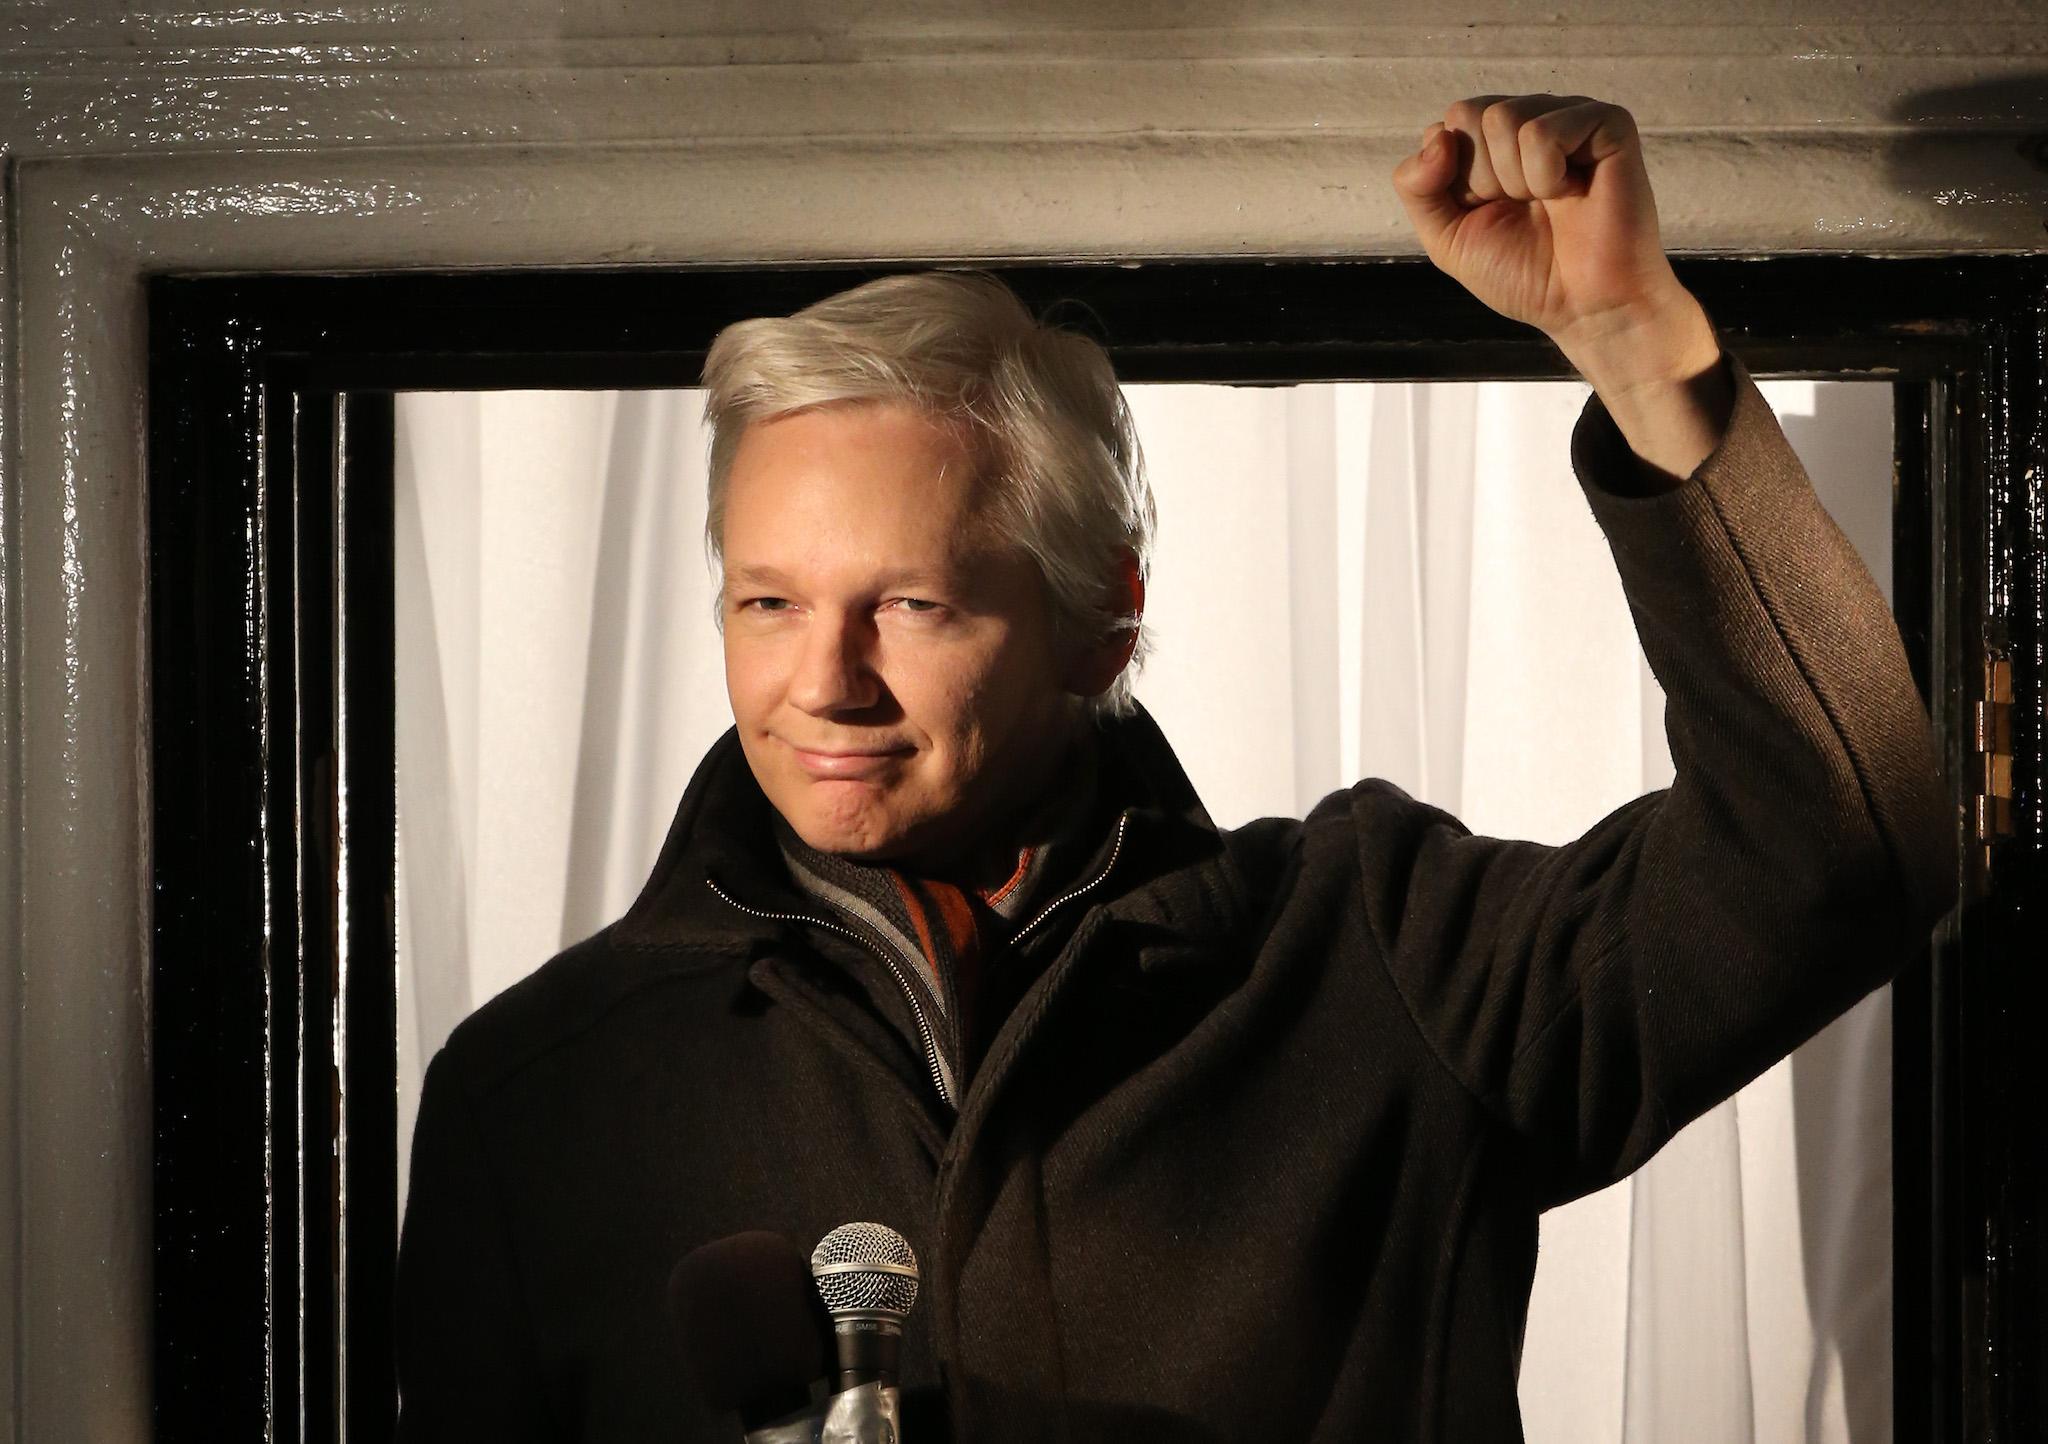 Wikileaks founder Julian Assange speaks from the Ecuadorian Embassy on December 20, 2012 in London, England